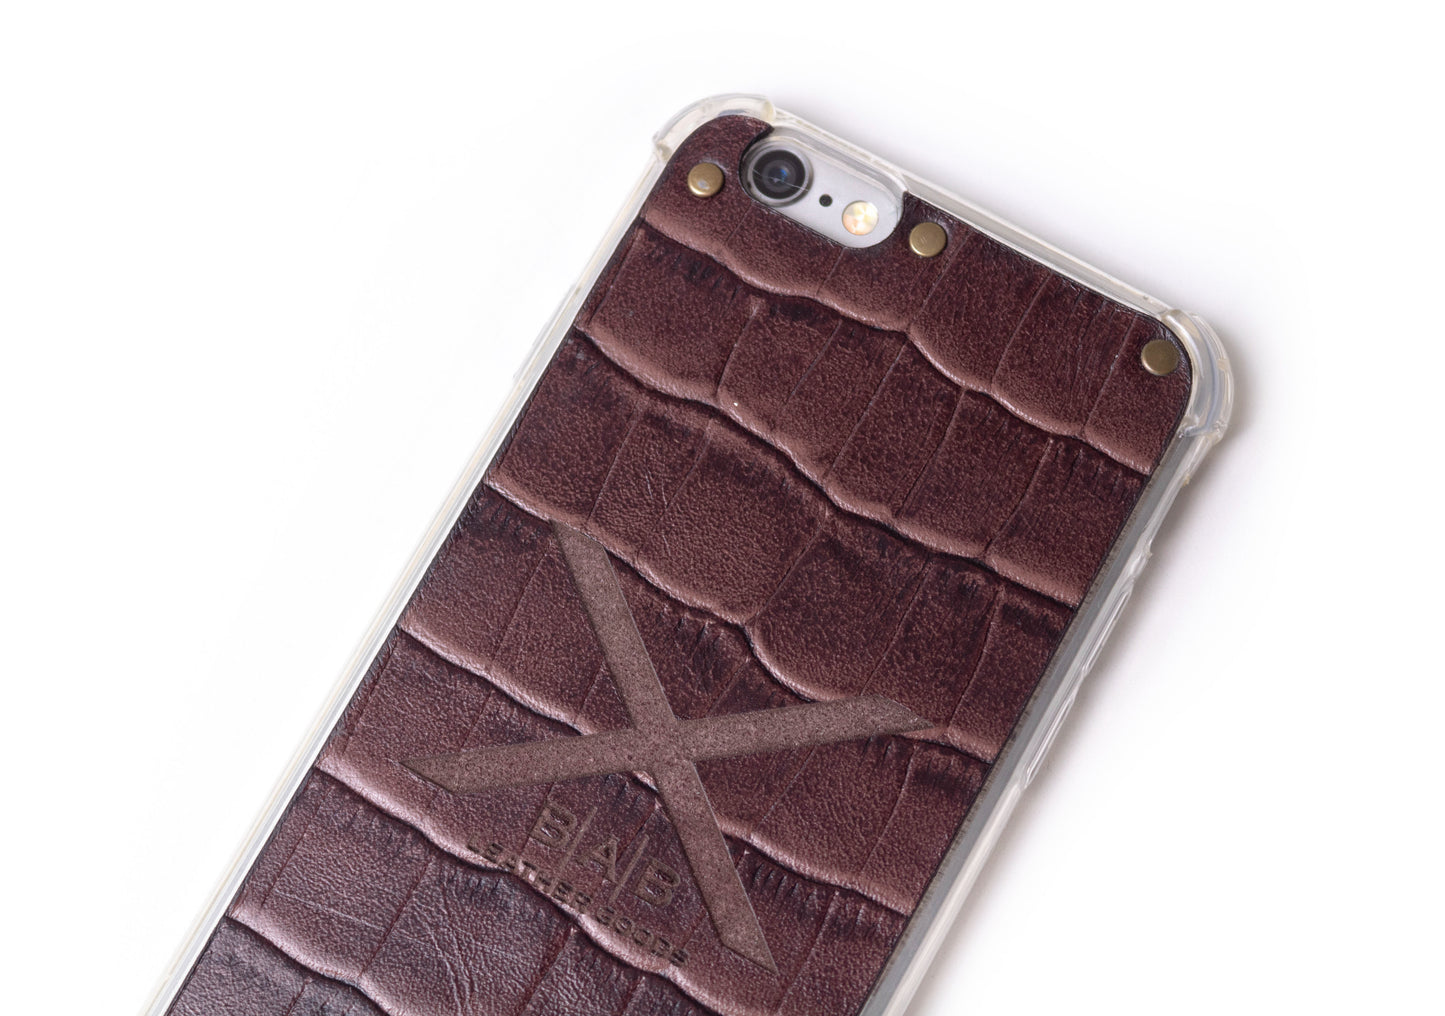 Coque pour iPhone en Cuir Véritable Crocodile Marron Texturé, découpée et gravée au laser, 5 Rivets en Bronze.- F36